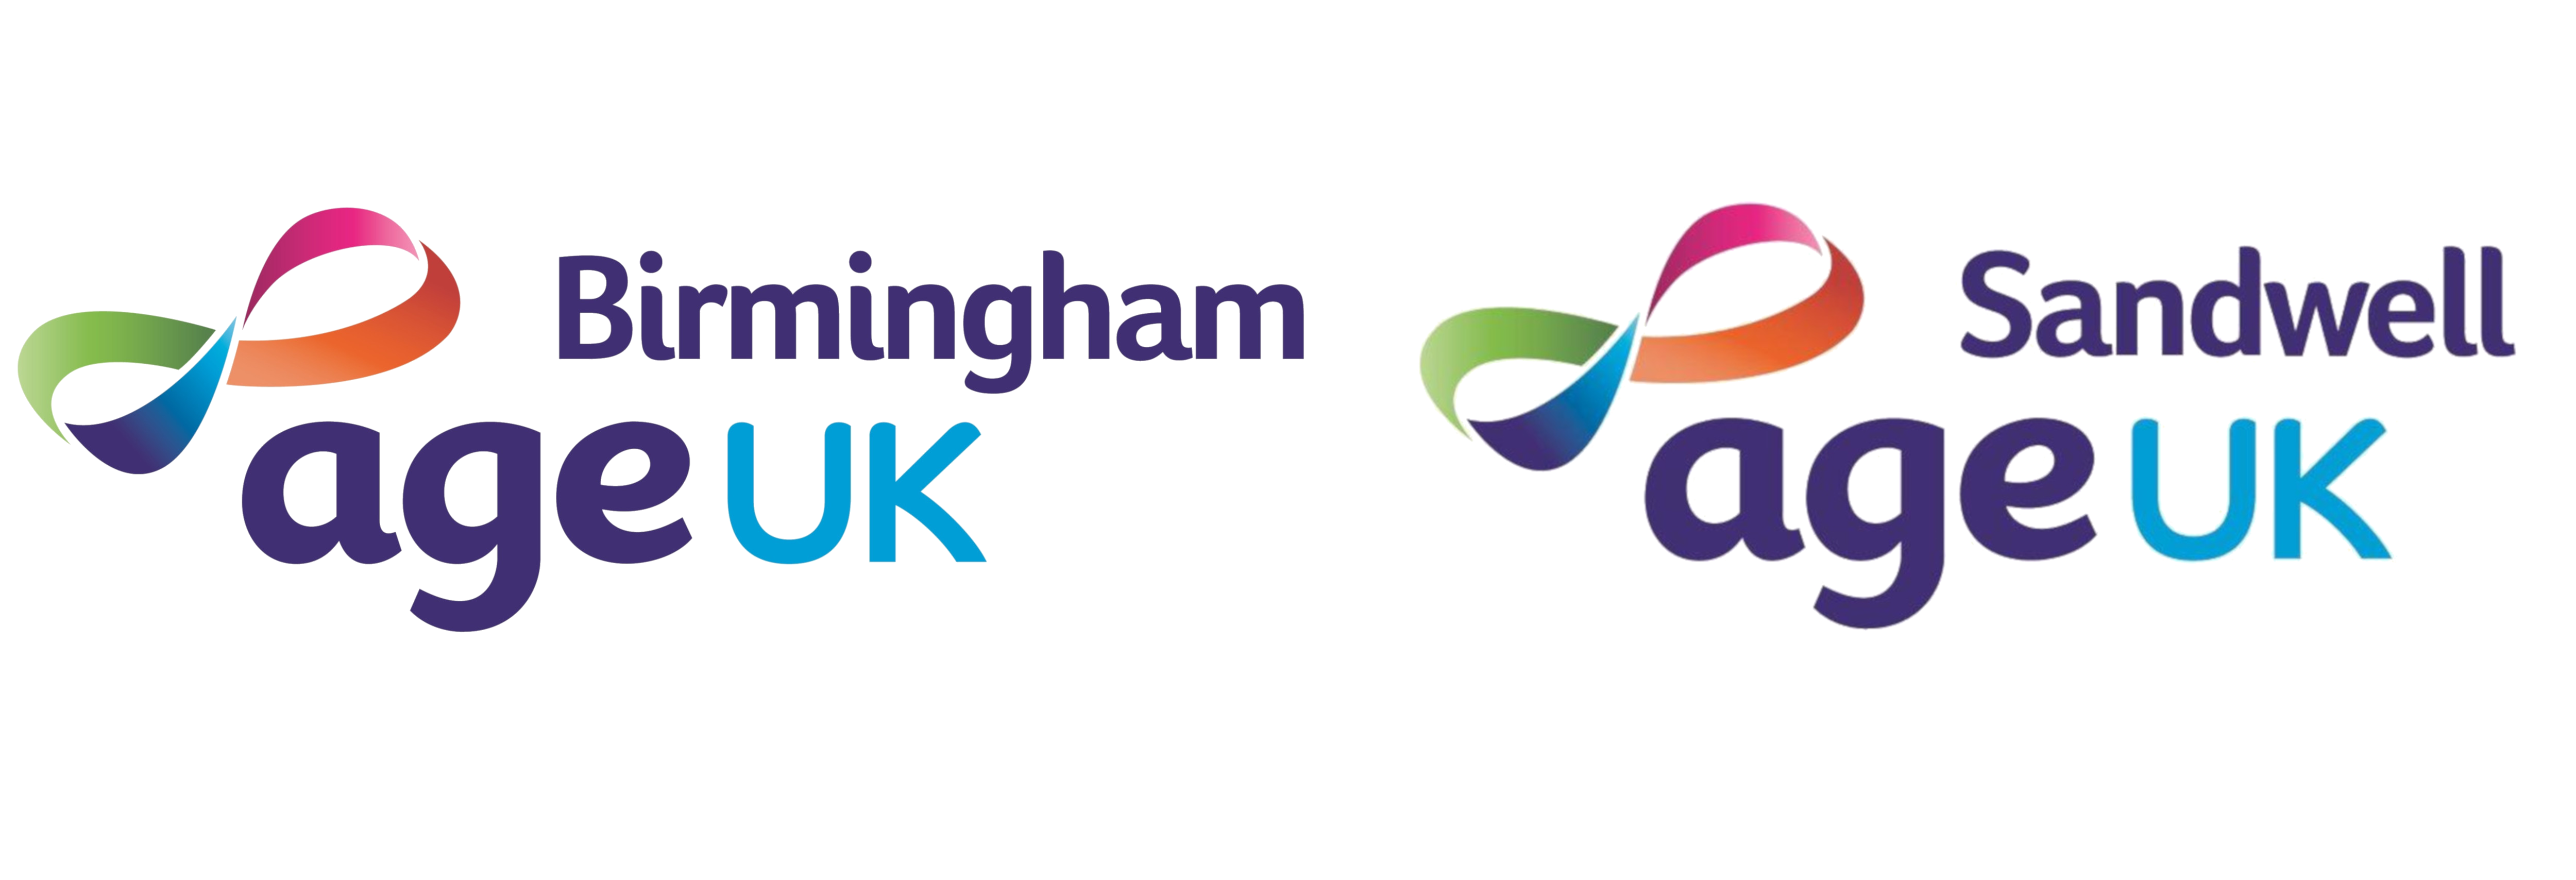 Age UK Birmingham and Age UK Sandwell logo